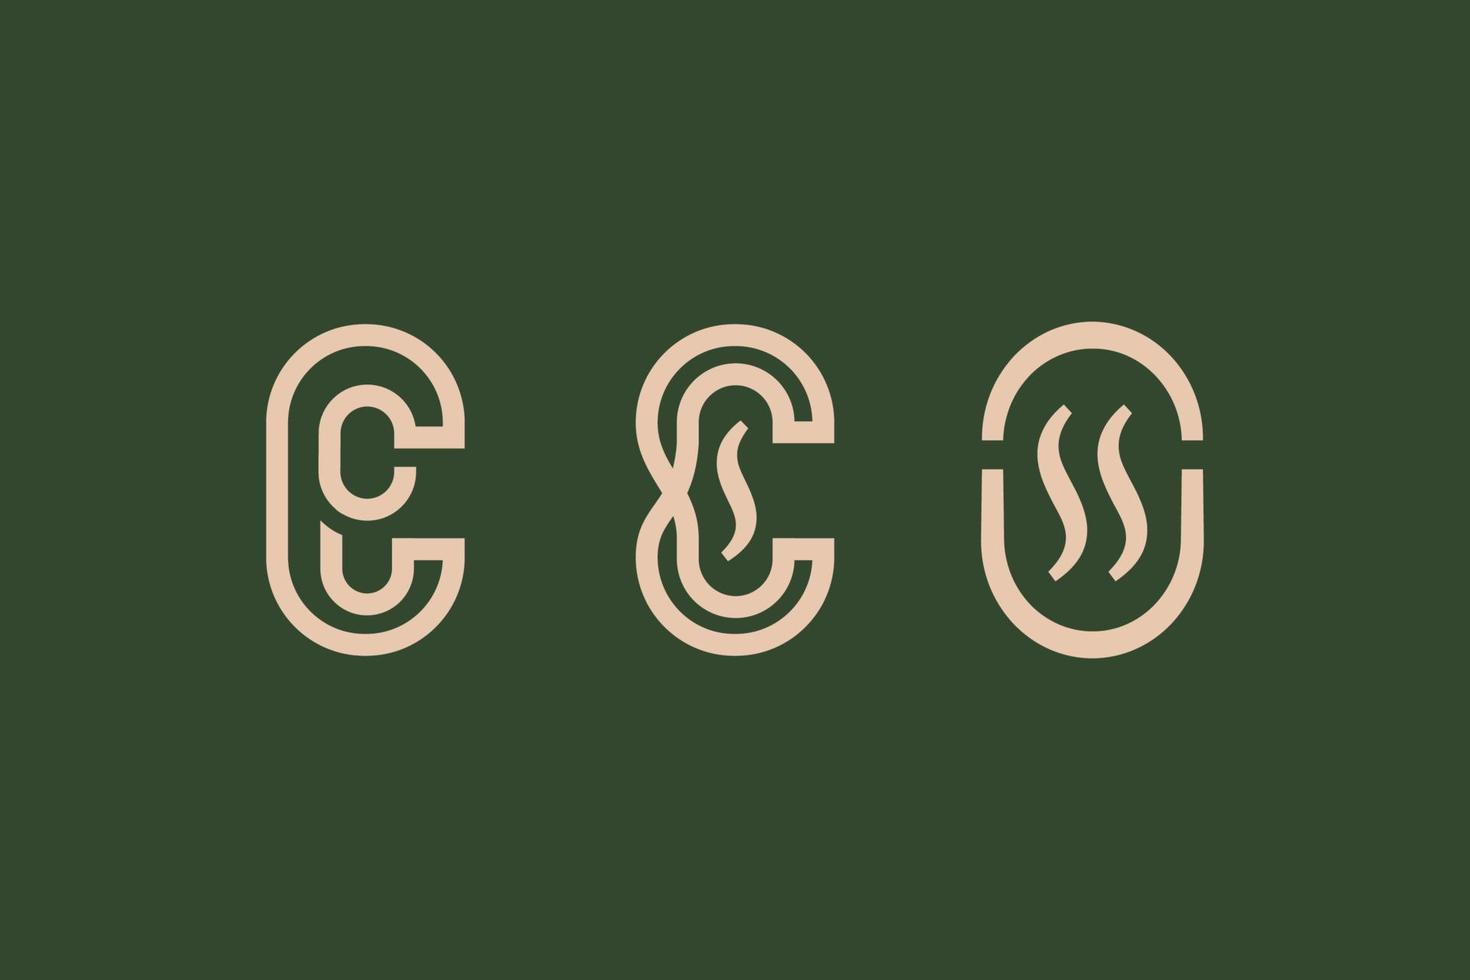 monoline kaffe logotyper uppsättning med klassisk stil vektor